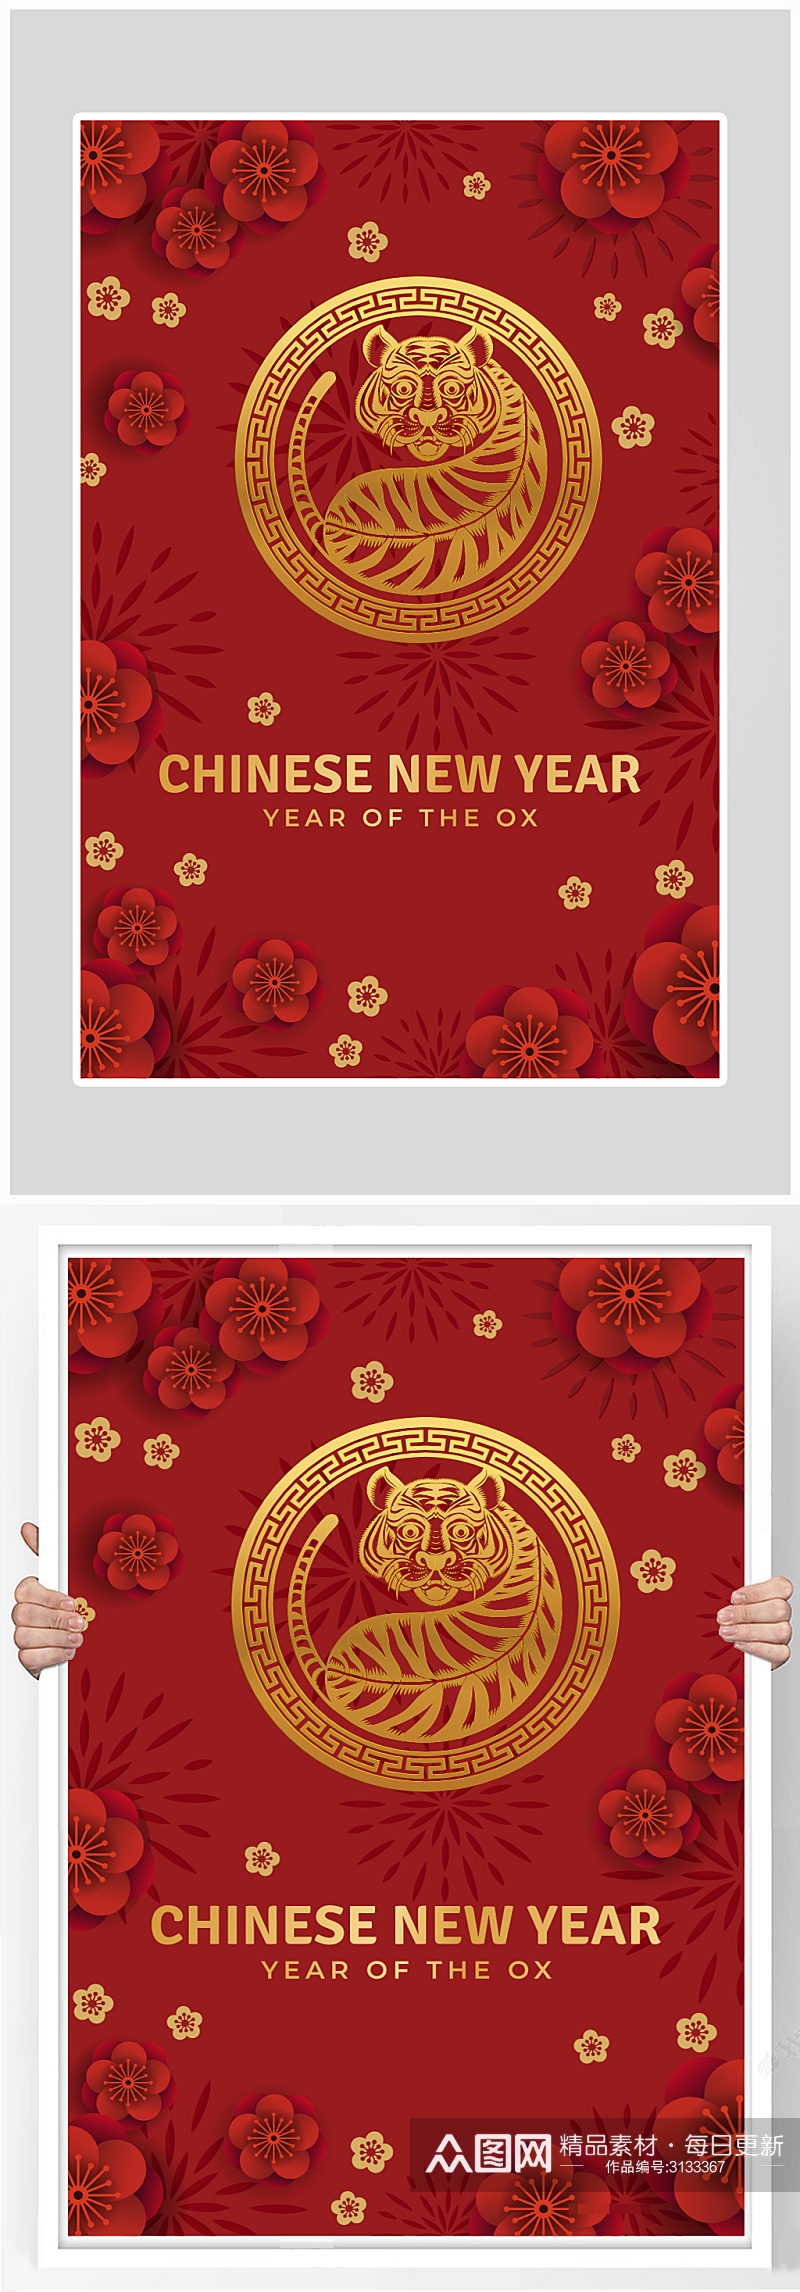 创意红色质感虎年新年狂欢海报设计素材